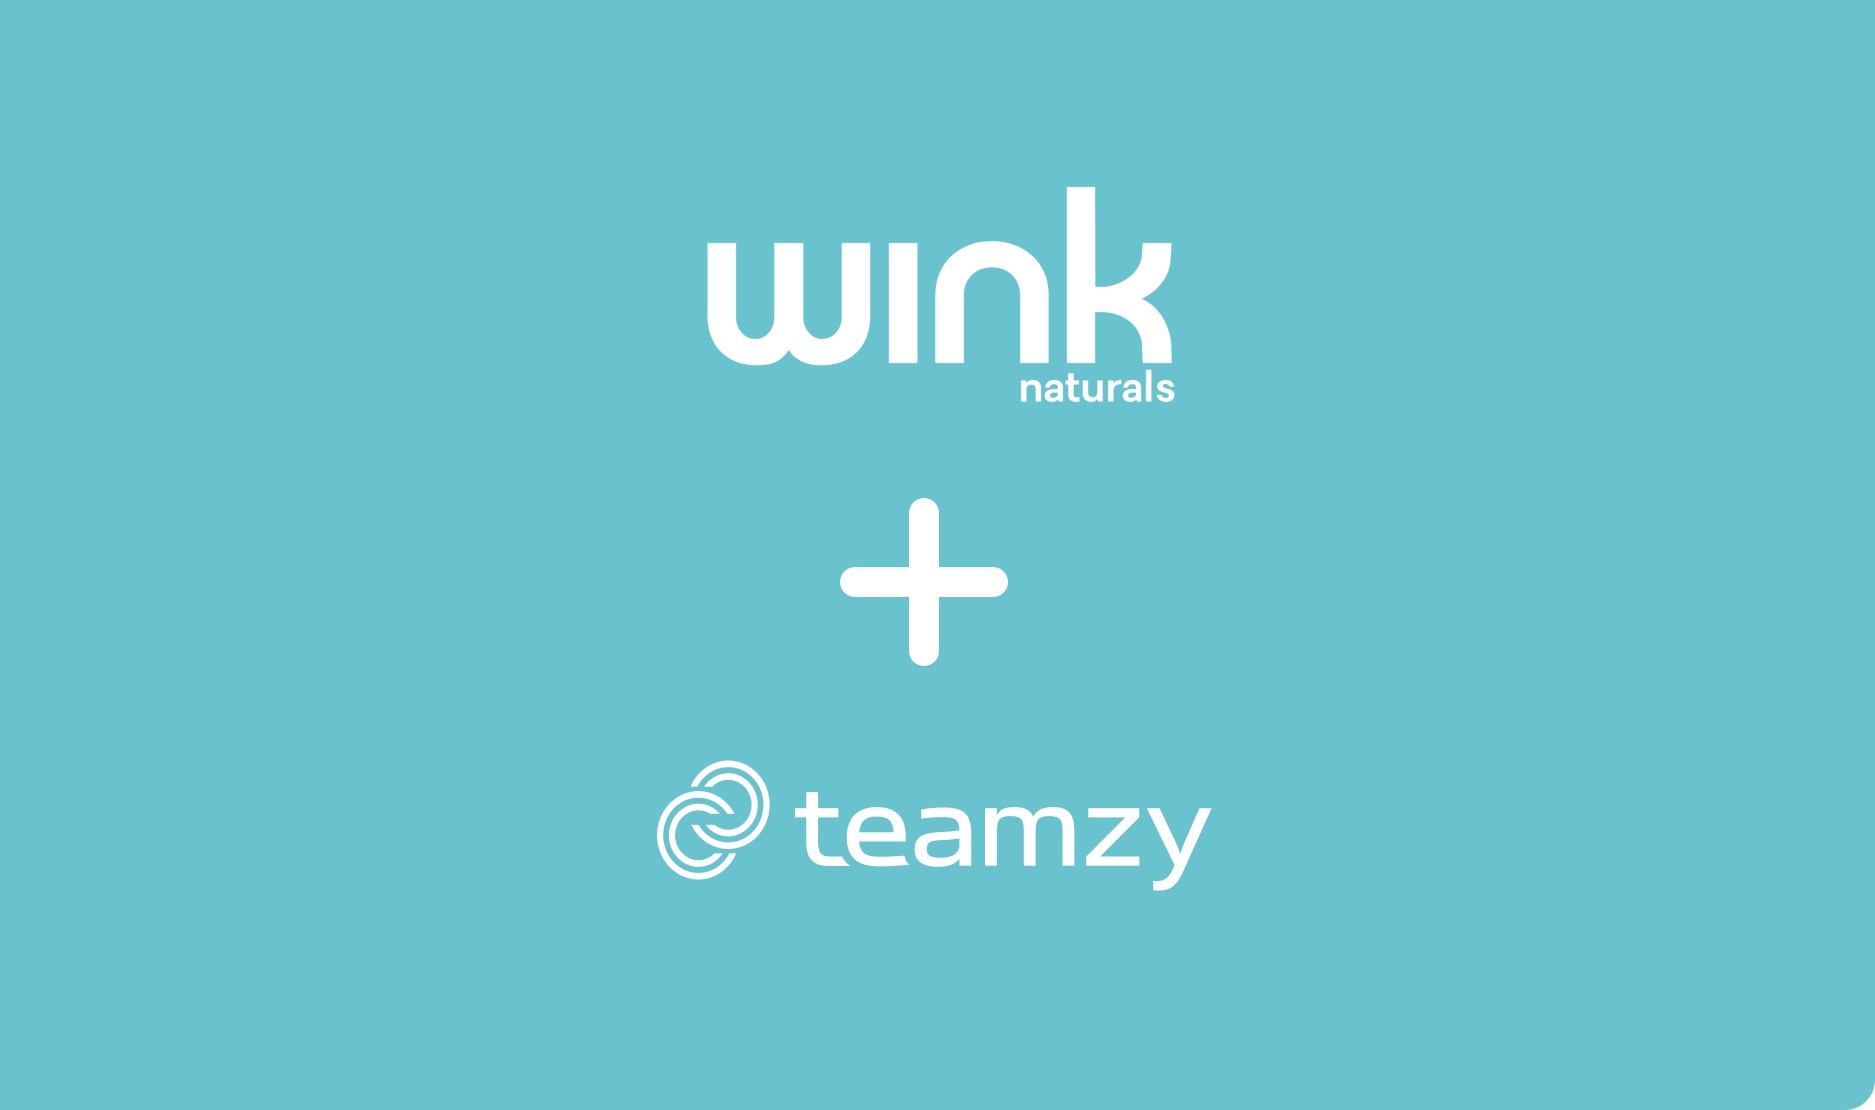 wink-teamzy-6